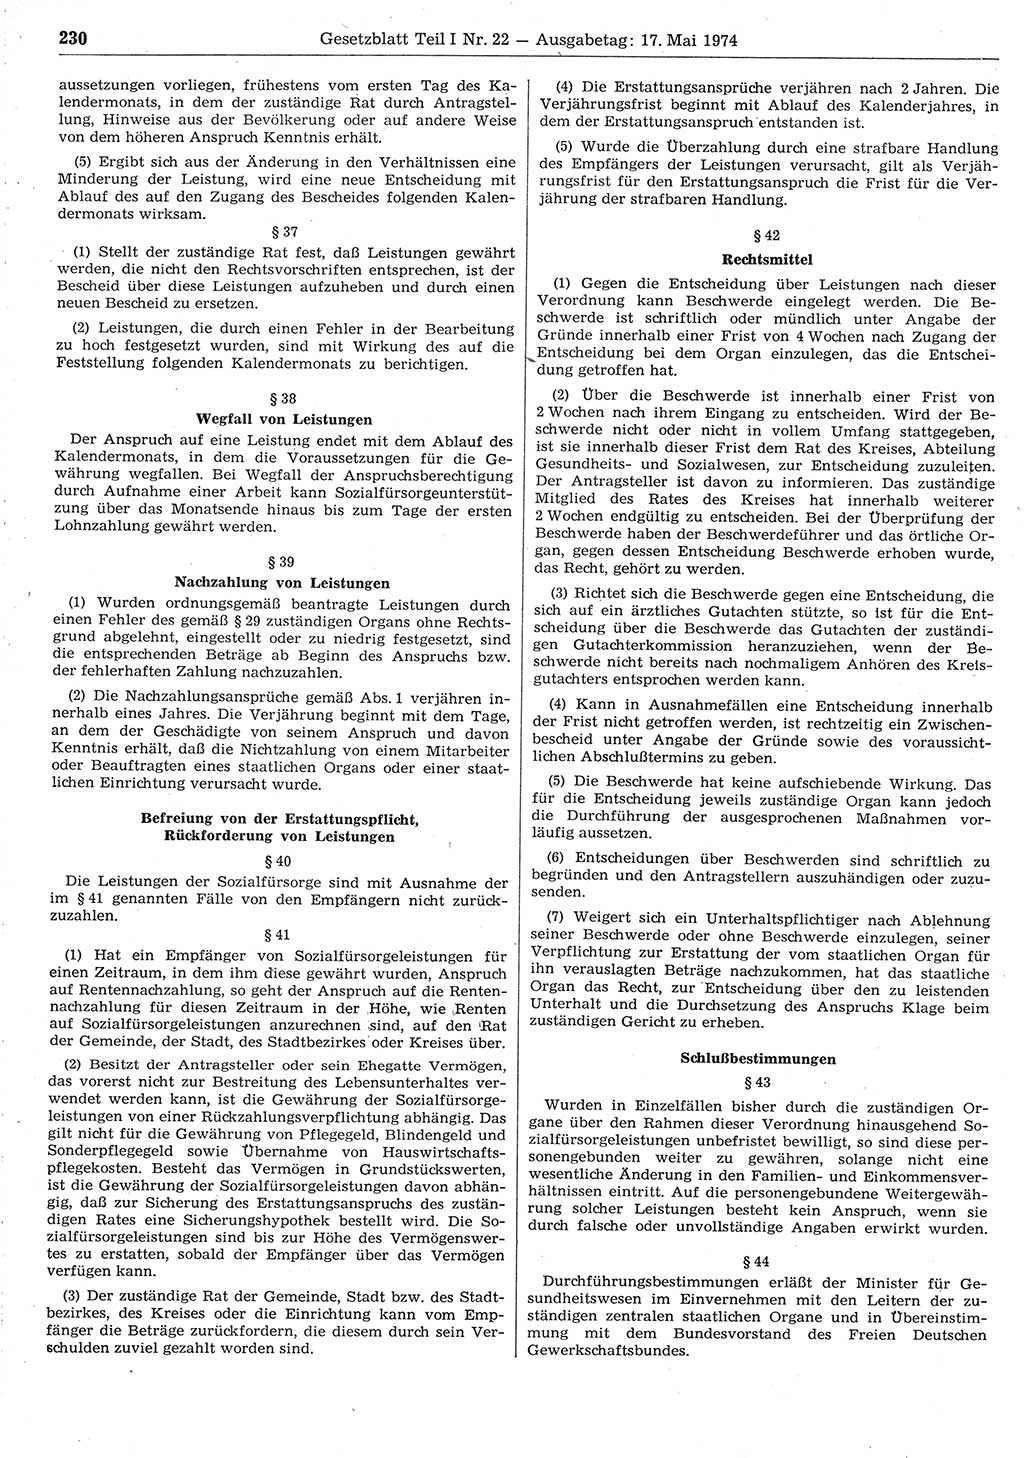 Gesetzblatt (GBl.) der Deutschen Demokratischen Republik (DDR) Teil Ⅰ 1974, Seite 230 (GBl. DDR Ⅰ 1974, S. 230)